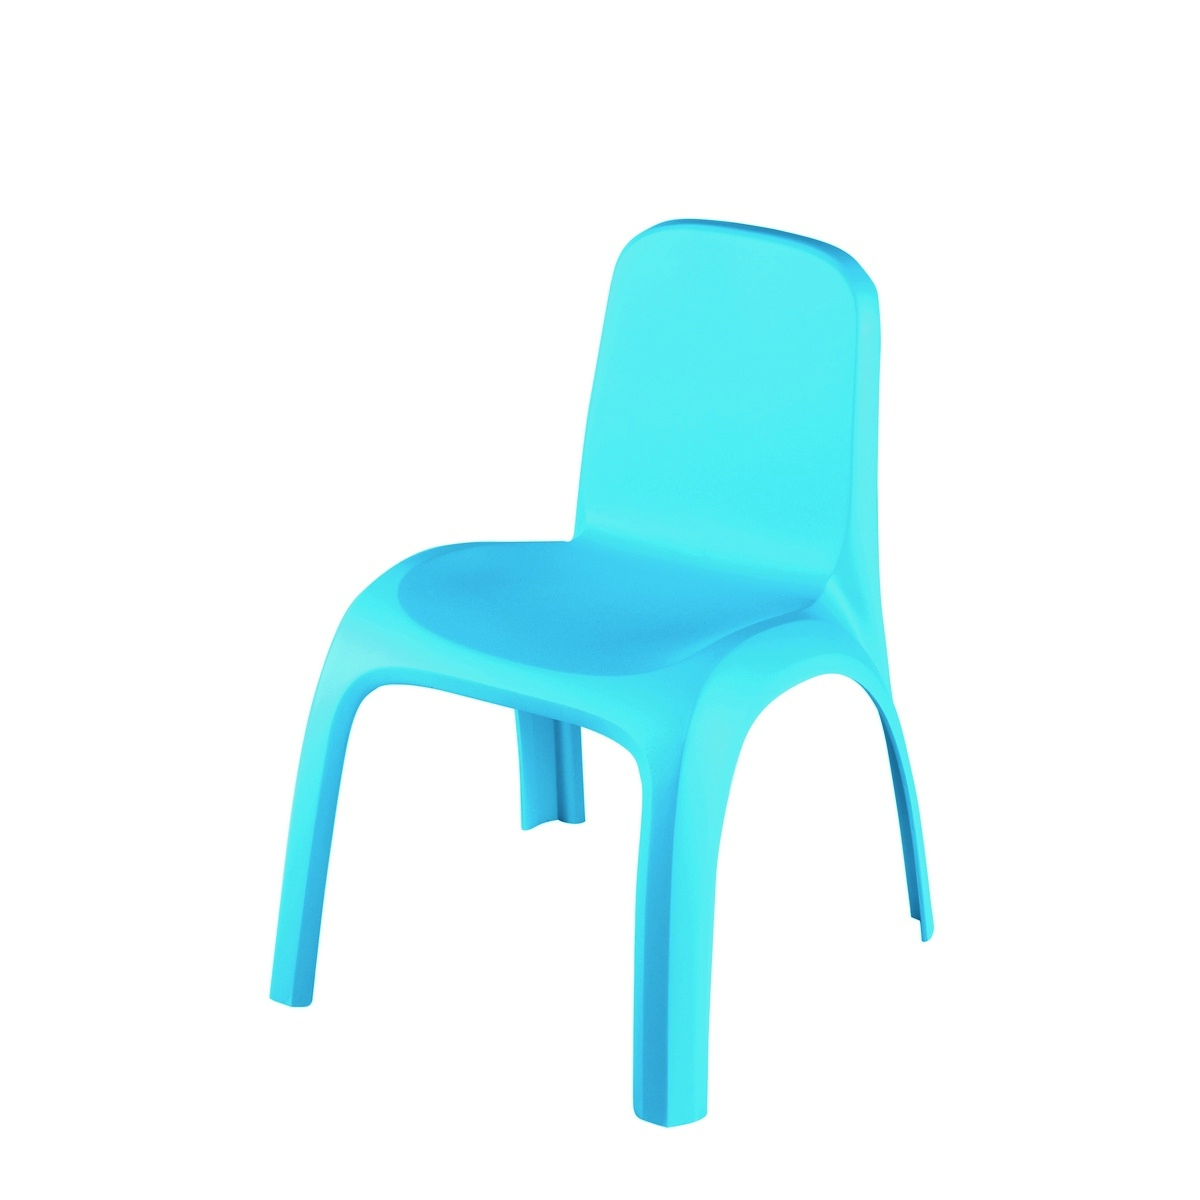 Kék gyerek szék - Keter